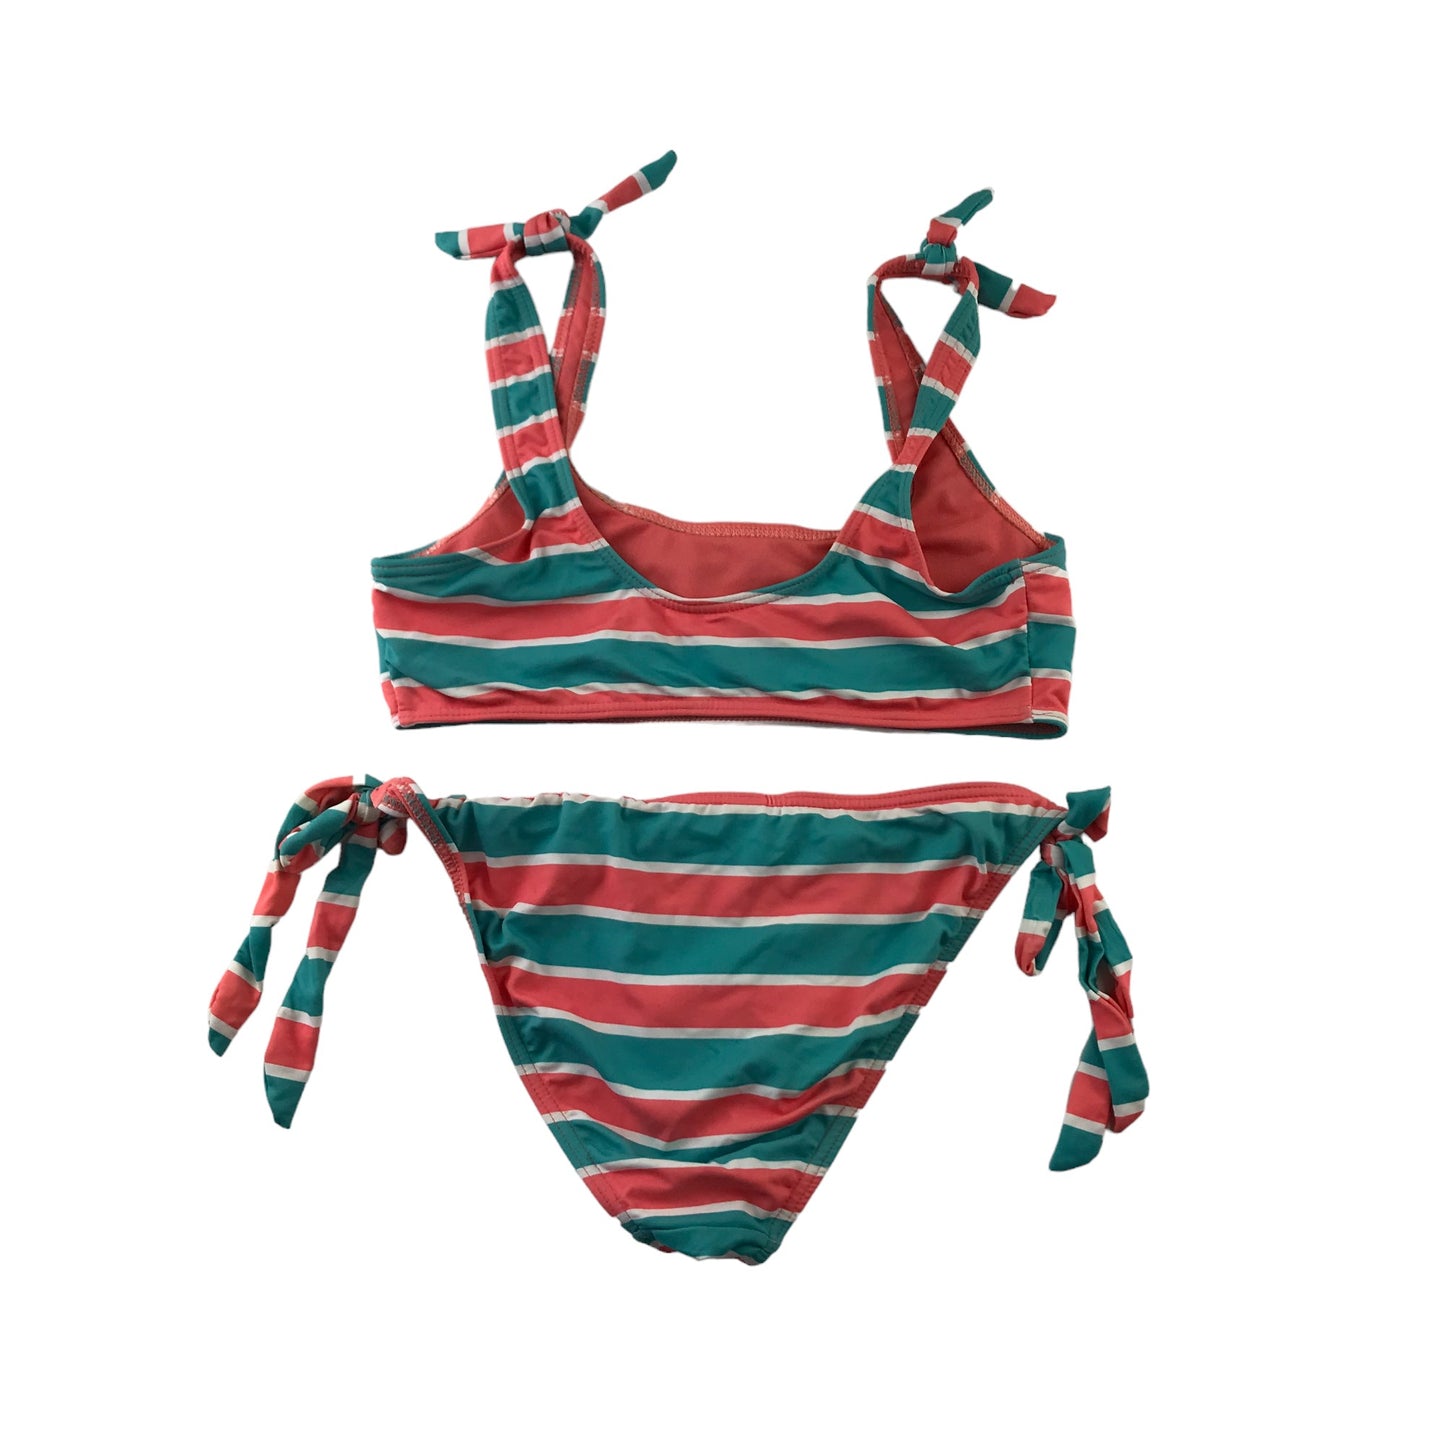 Primark Bikini Size Women 10 Salmon Red and Turquoise Stripy 2-piece set